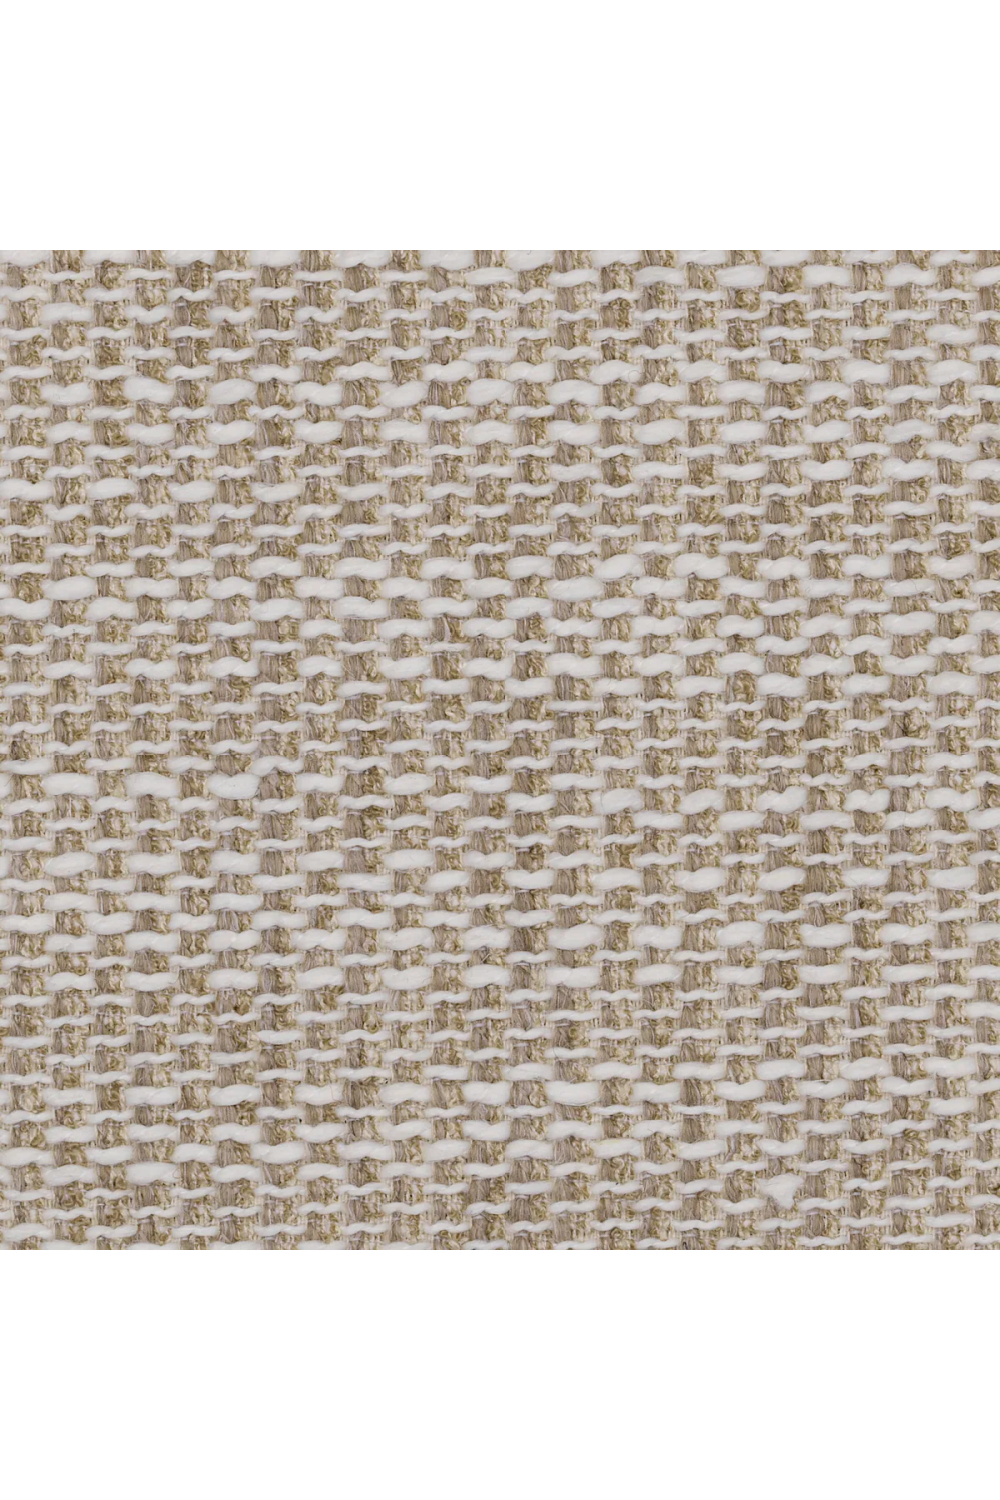 Modern Sand Fabric Sofa | Eichholtz Davide | Oroa.com